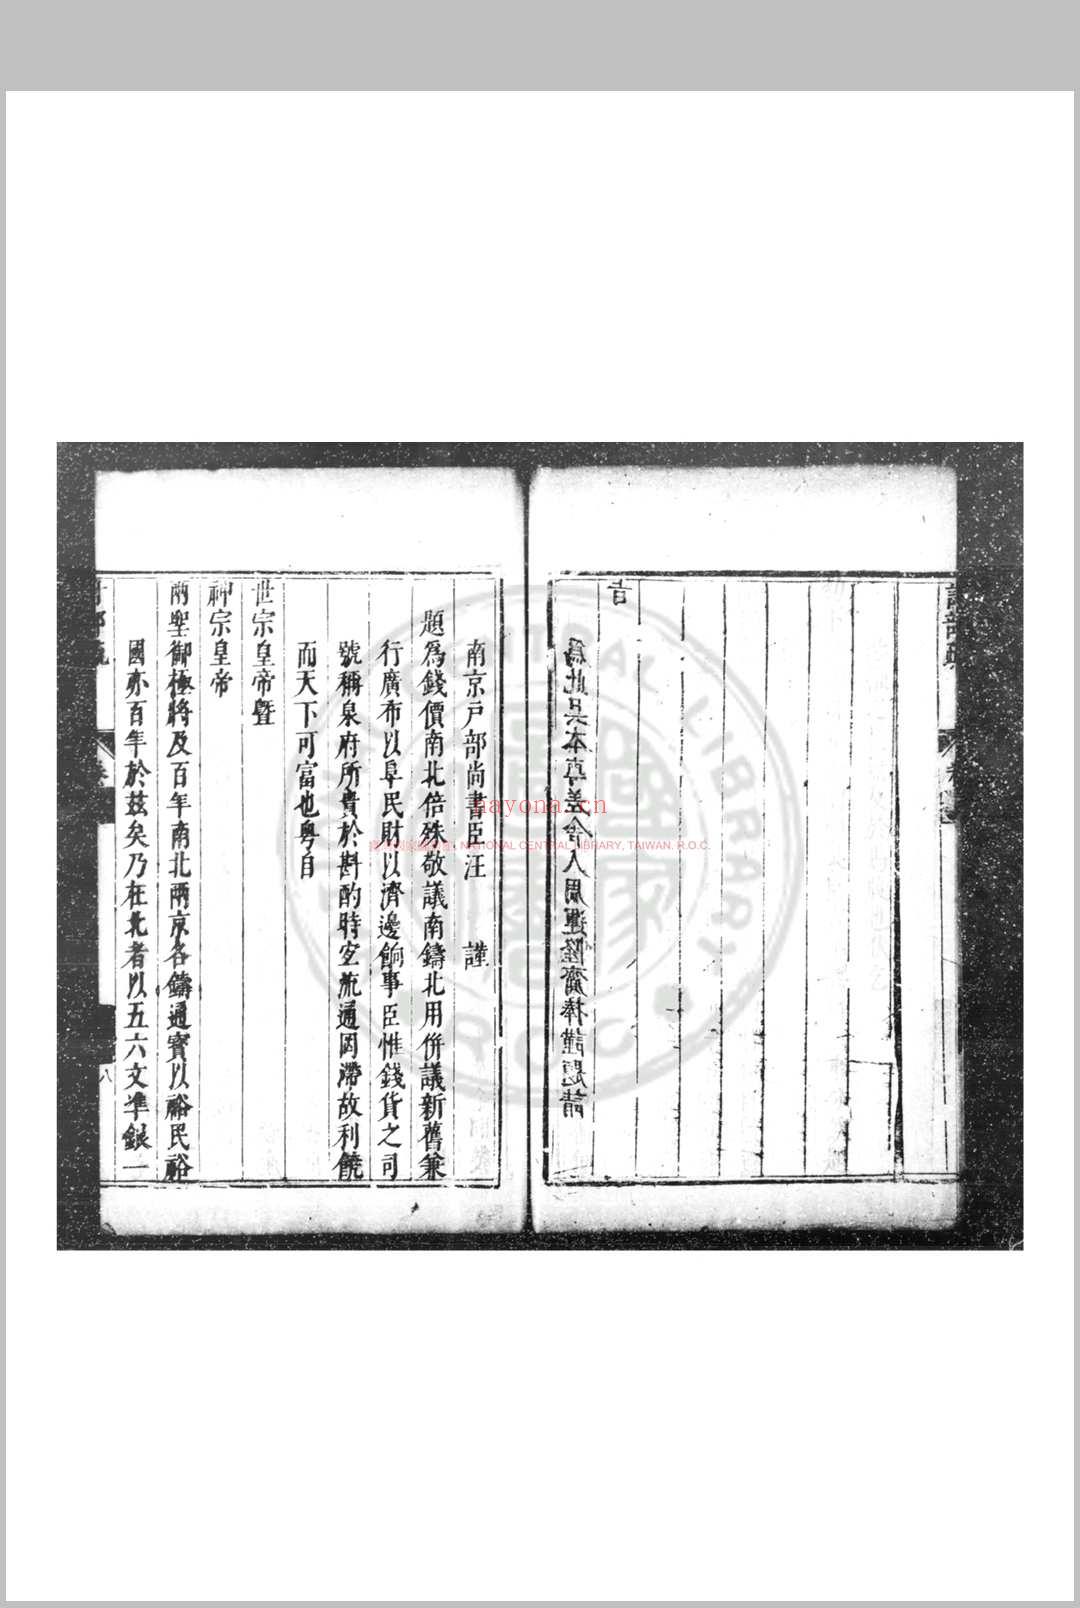 汪清简公奏疏 (明)汪应蛟撰 明天启间(1621-1627)刊本